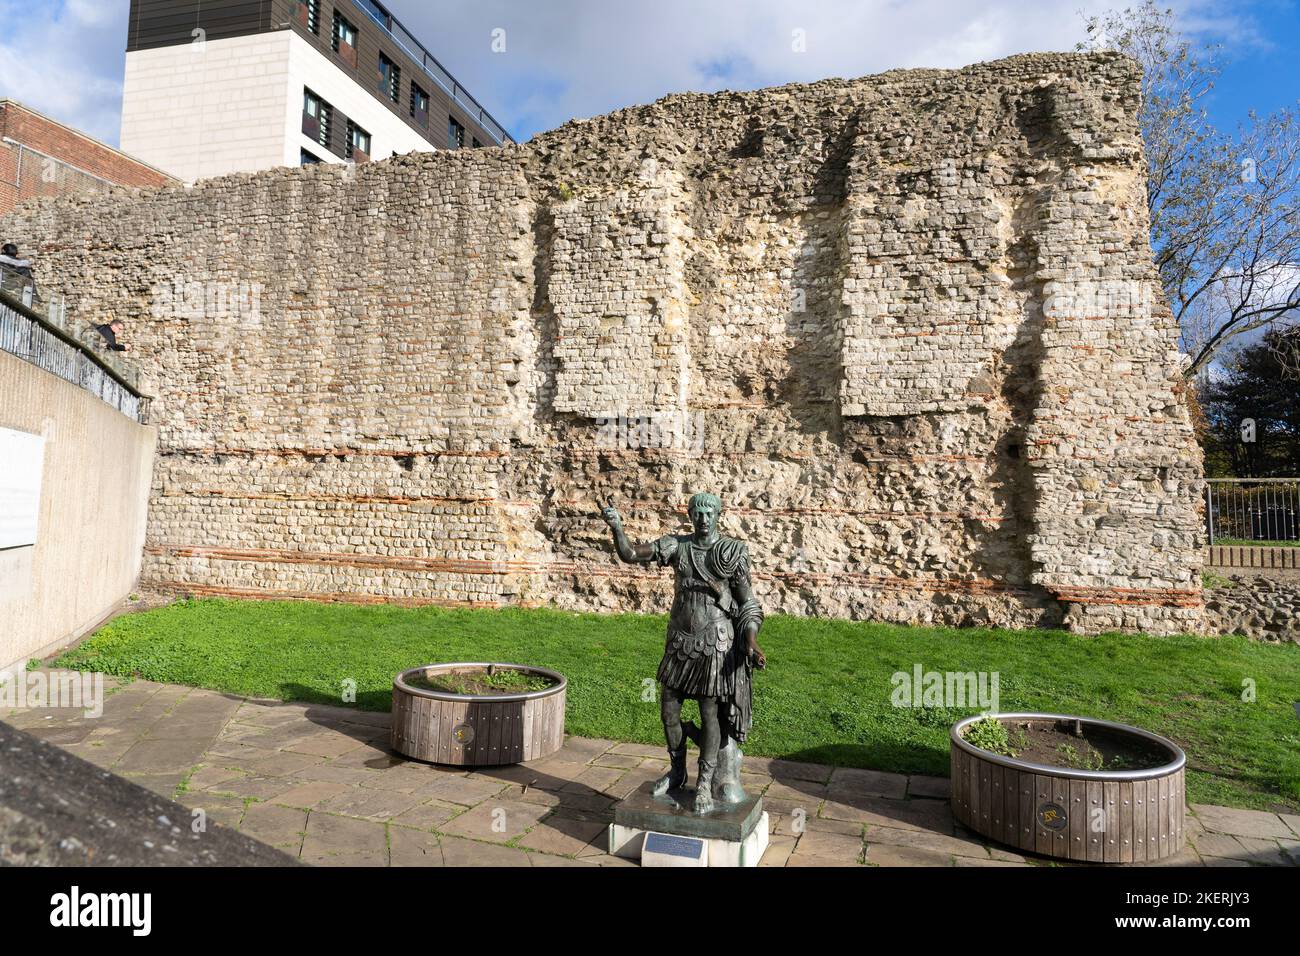 Bronzeskulptur des römischen Imperators Trajan vor der Londoner Mauer - antike römische Verteidigungsmauer für die Hafenstadt Londinium Stockfoto